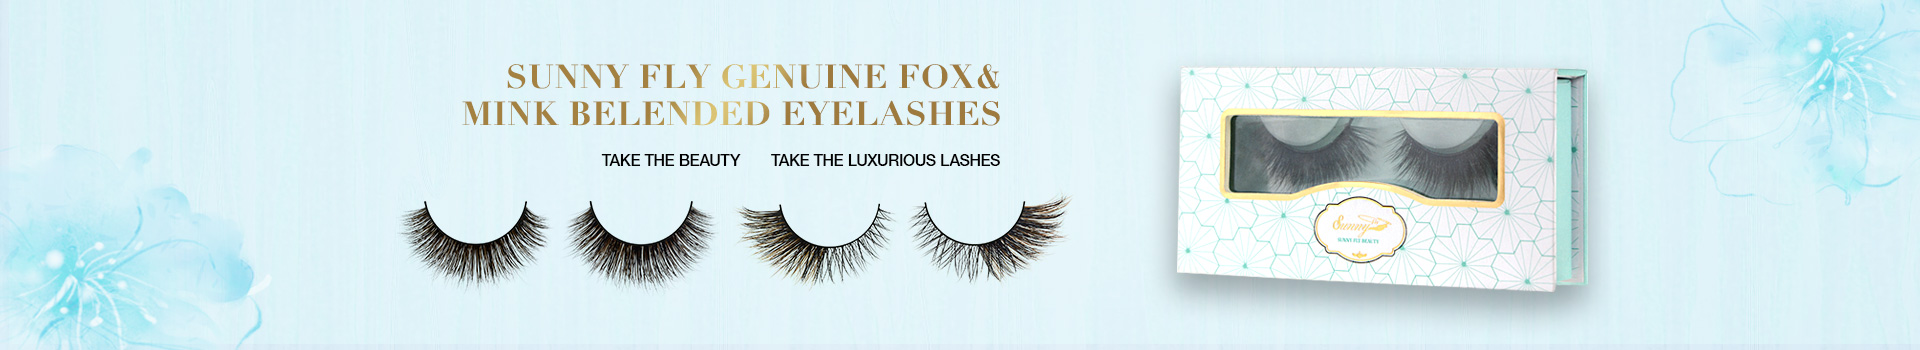 Fox & Mink Fur Blended Eyelashes FMB27